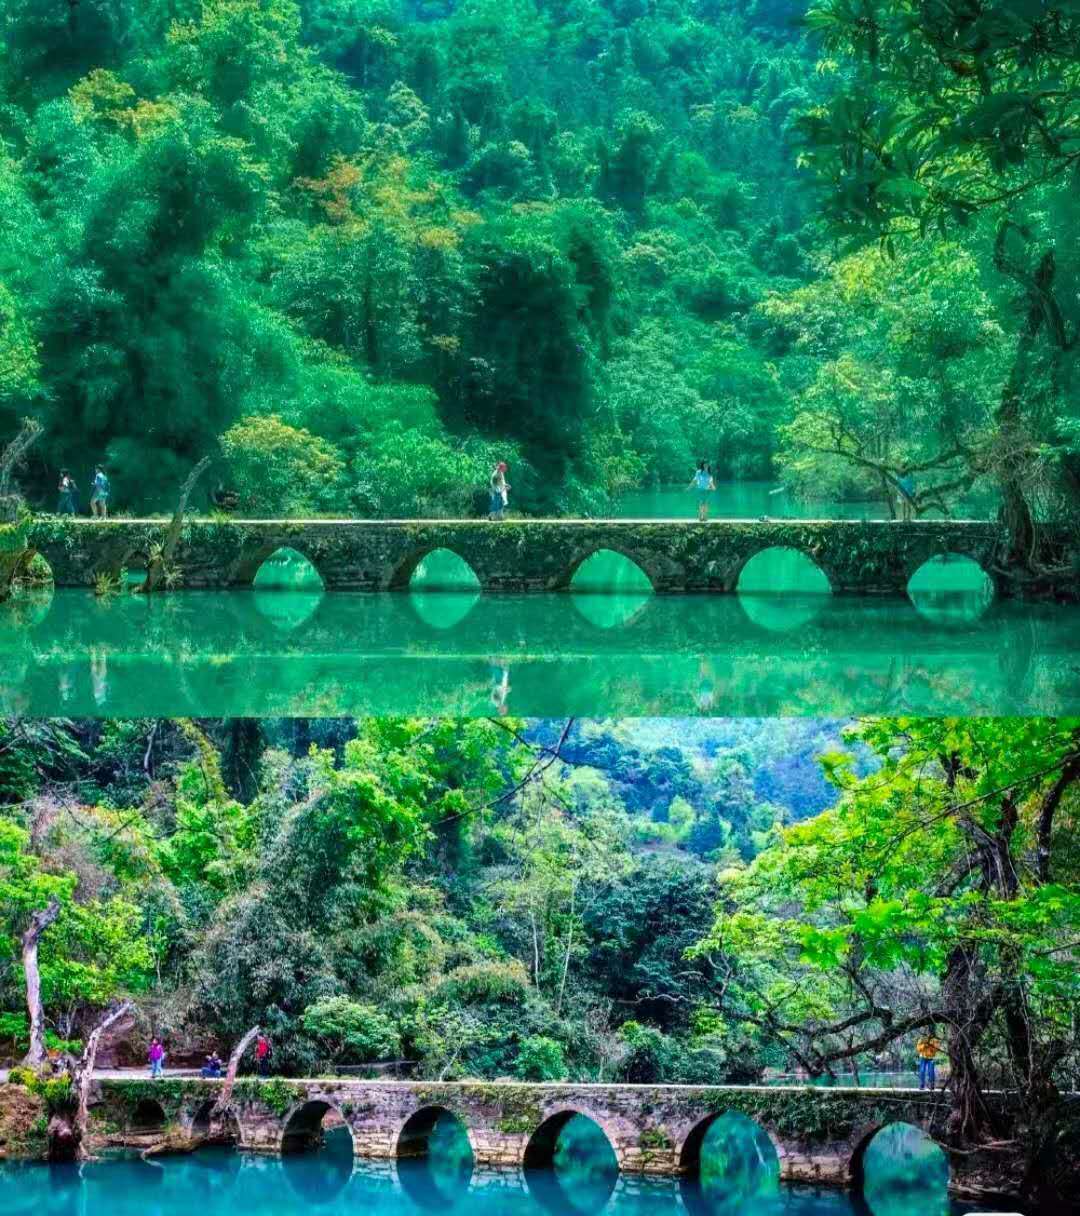 自驾游是去贵州旅游的最佳路线，体验多样化的贵州风情